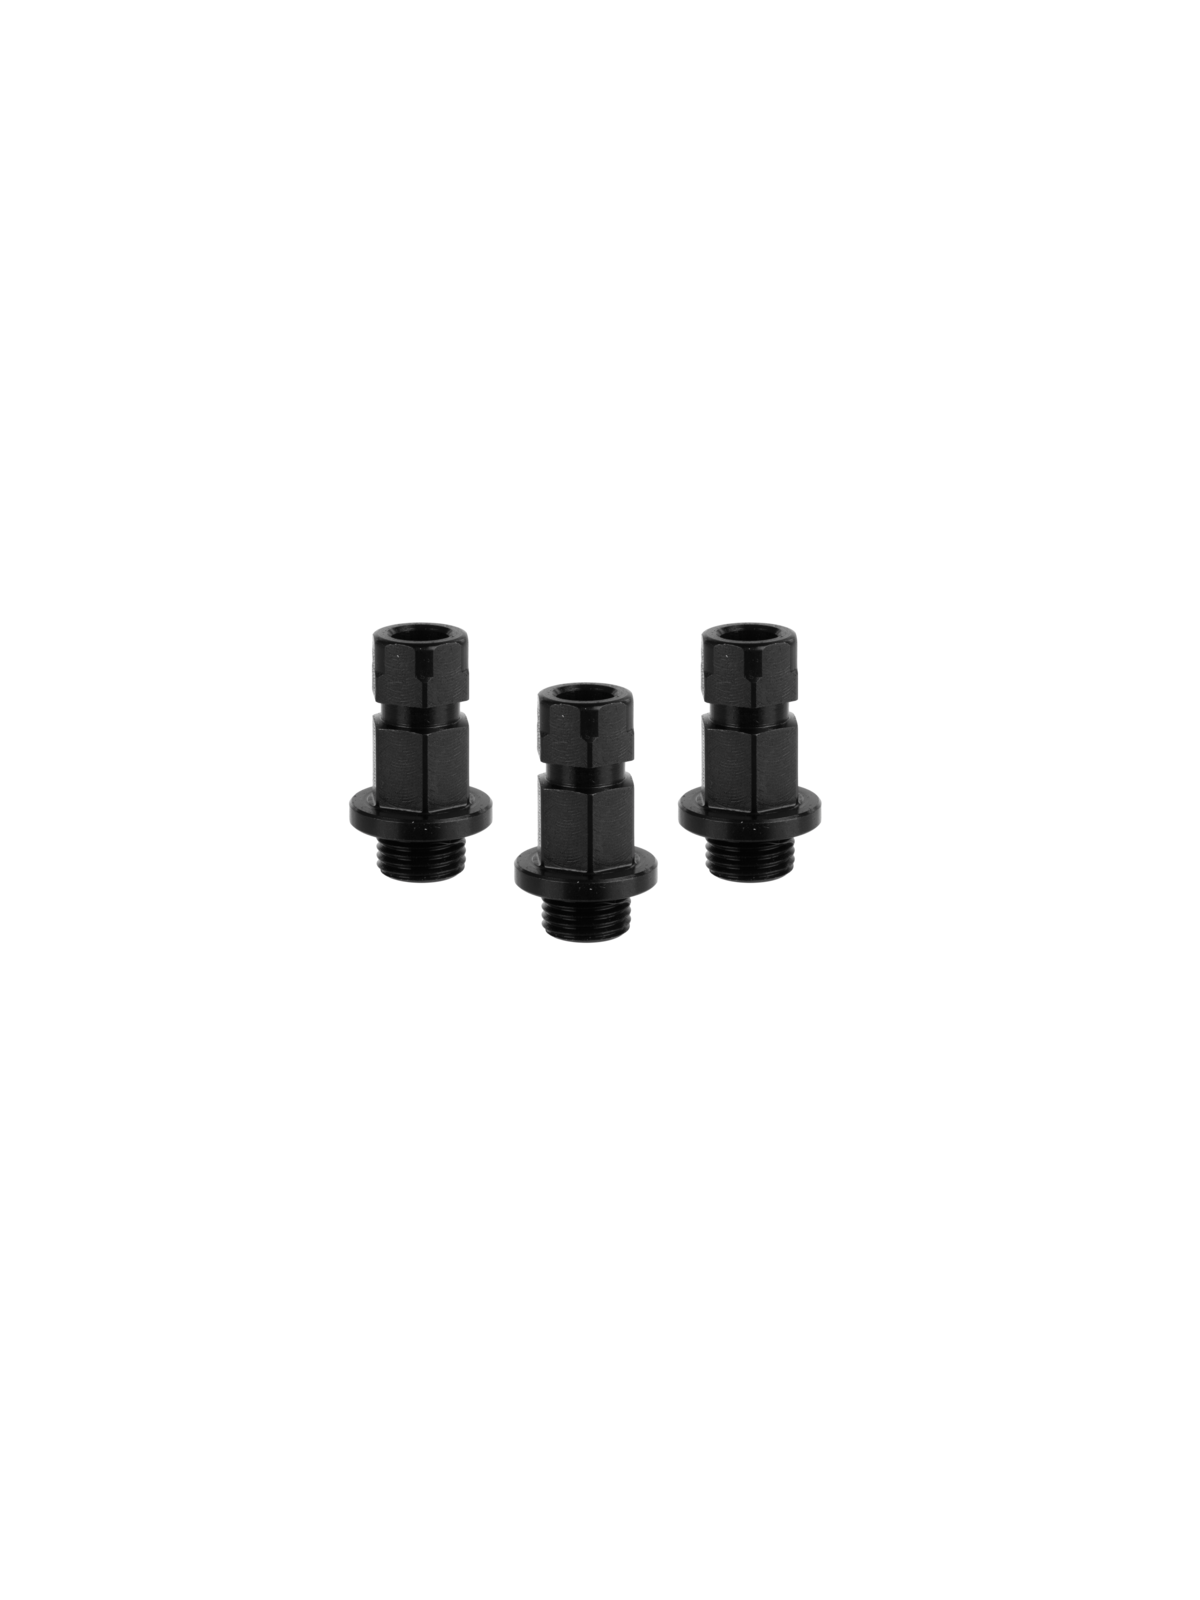 Mandrex MXqs ONE-KLICK-Adapter für alle Arten von Bi-Metall und Mehrzweck-Lochsägen 14 - 30 mm 3 Stück | JVL-Europe